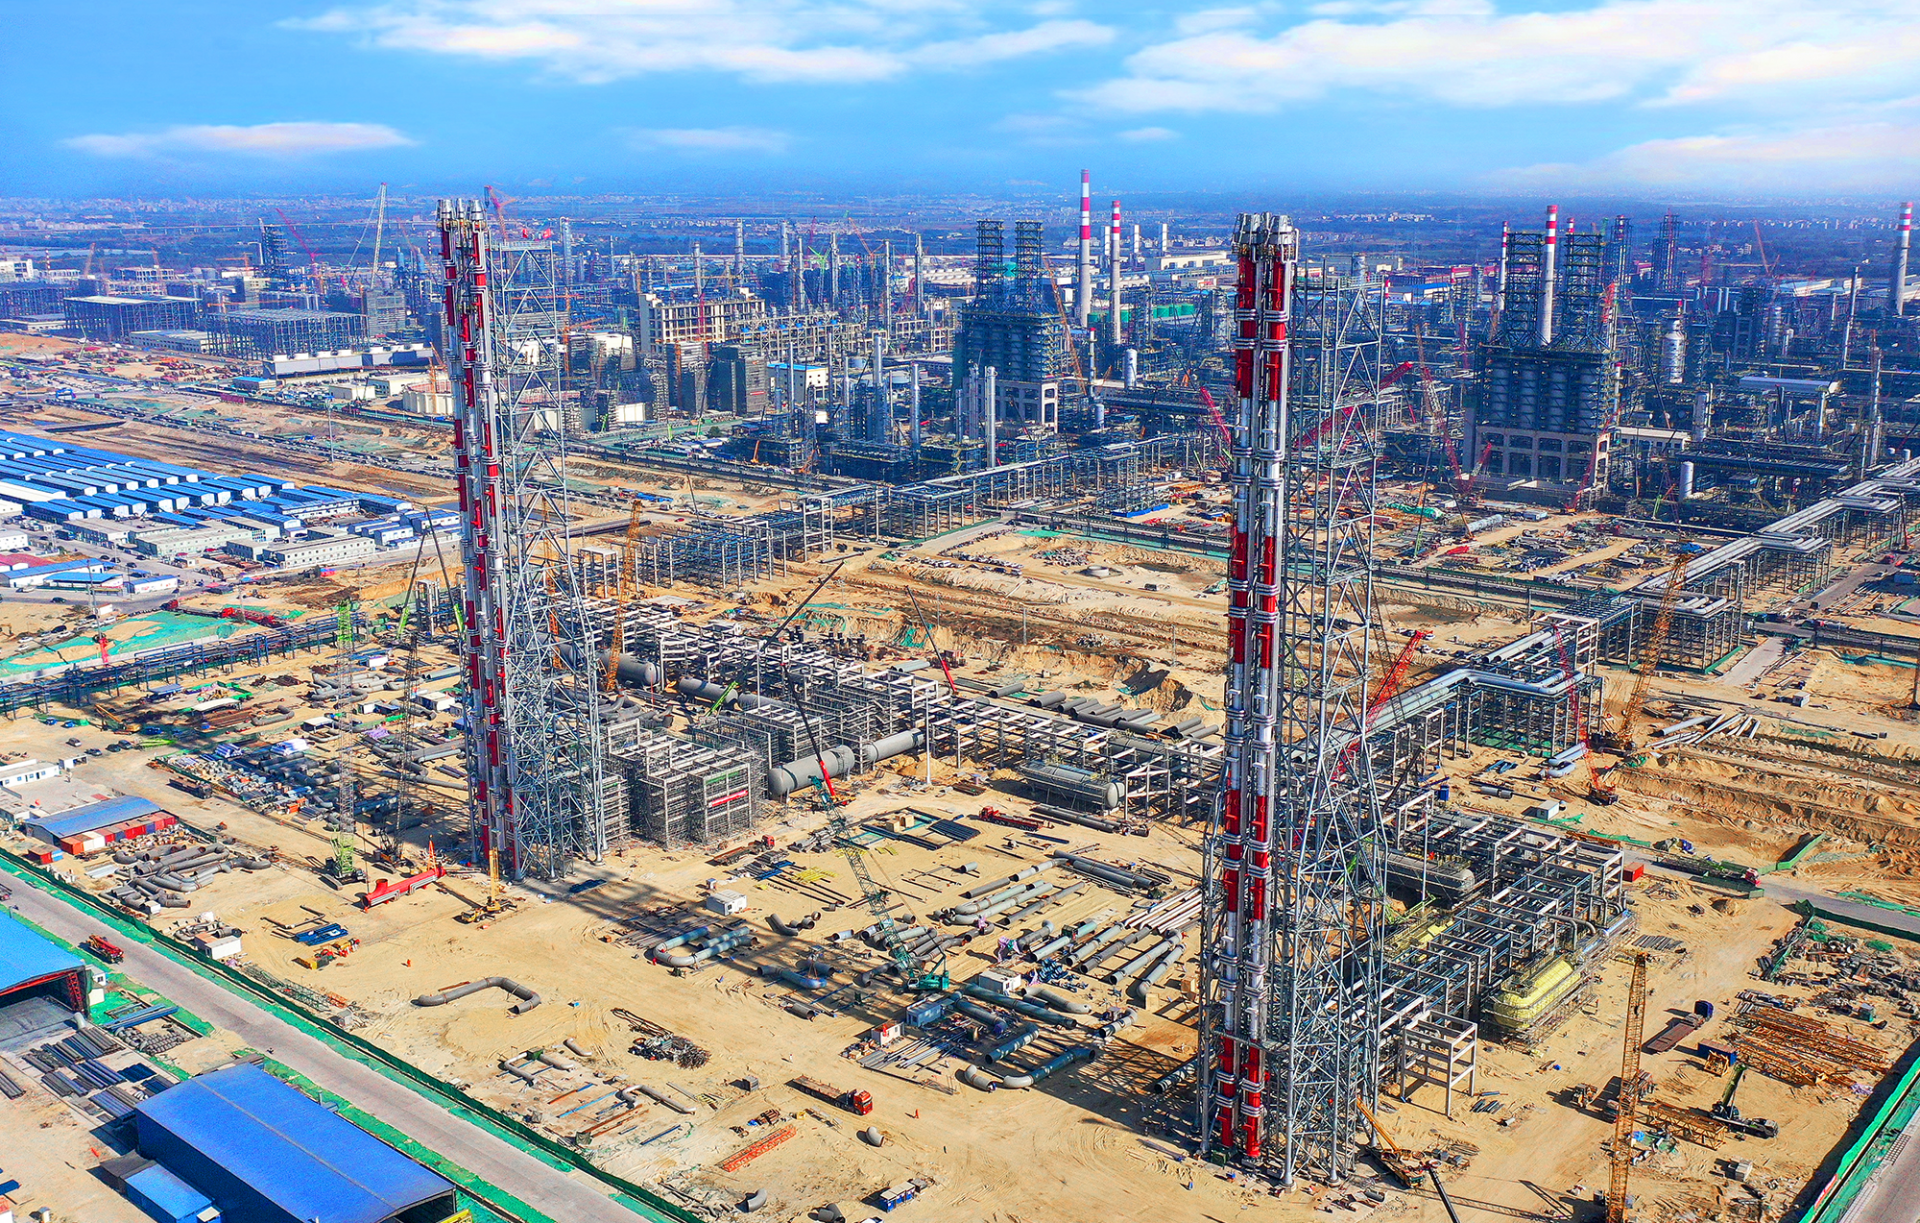 广东石化炼化一体化项目完成国产最高火炬塔主体安装